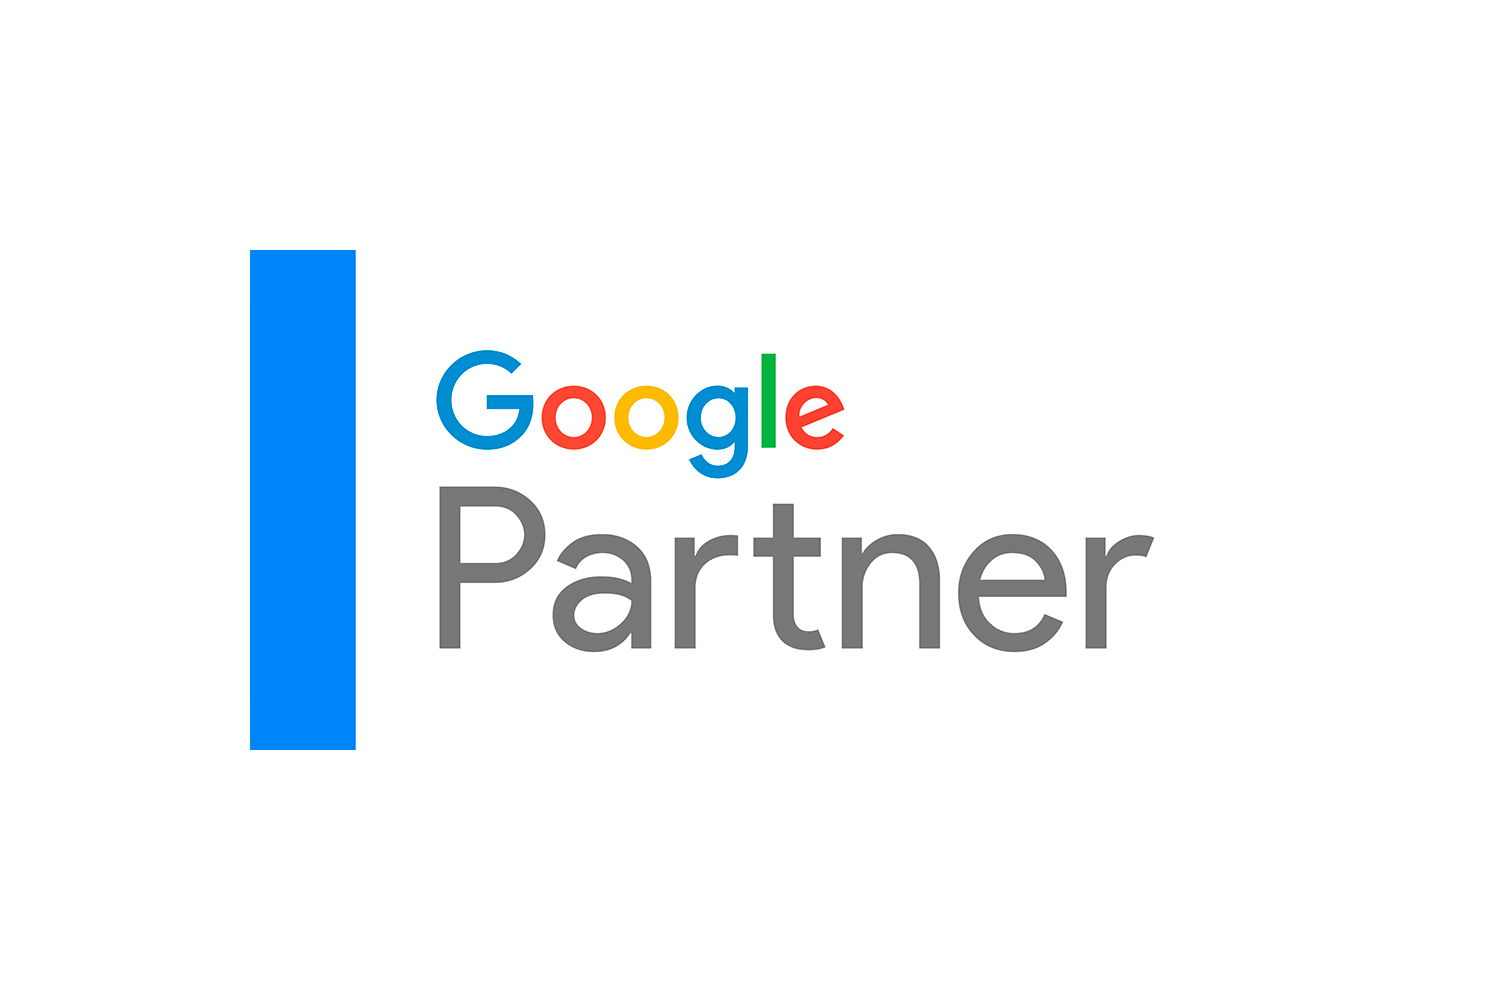 googlepartner